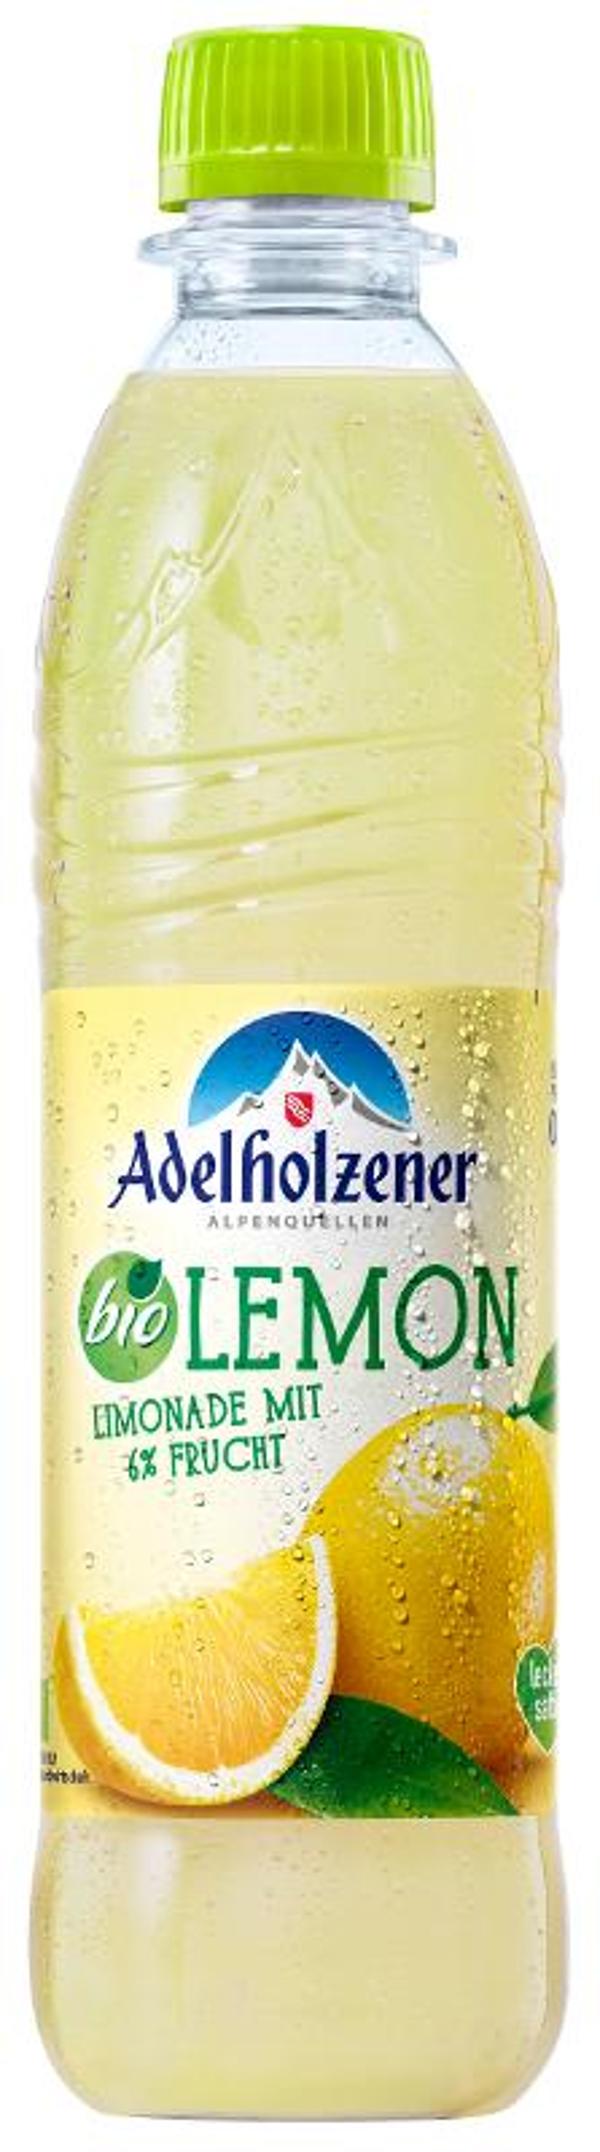 Produktfoto zu VPE Adelholzener Alpenquellen, Lemon  12x0,5 L